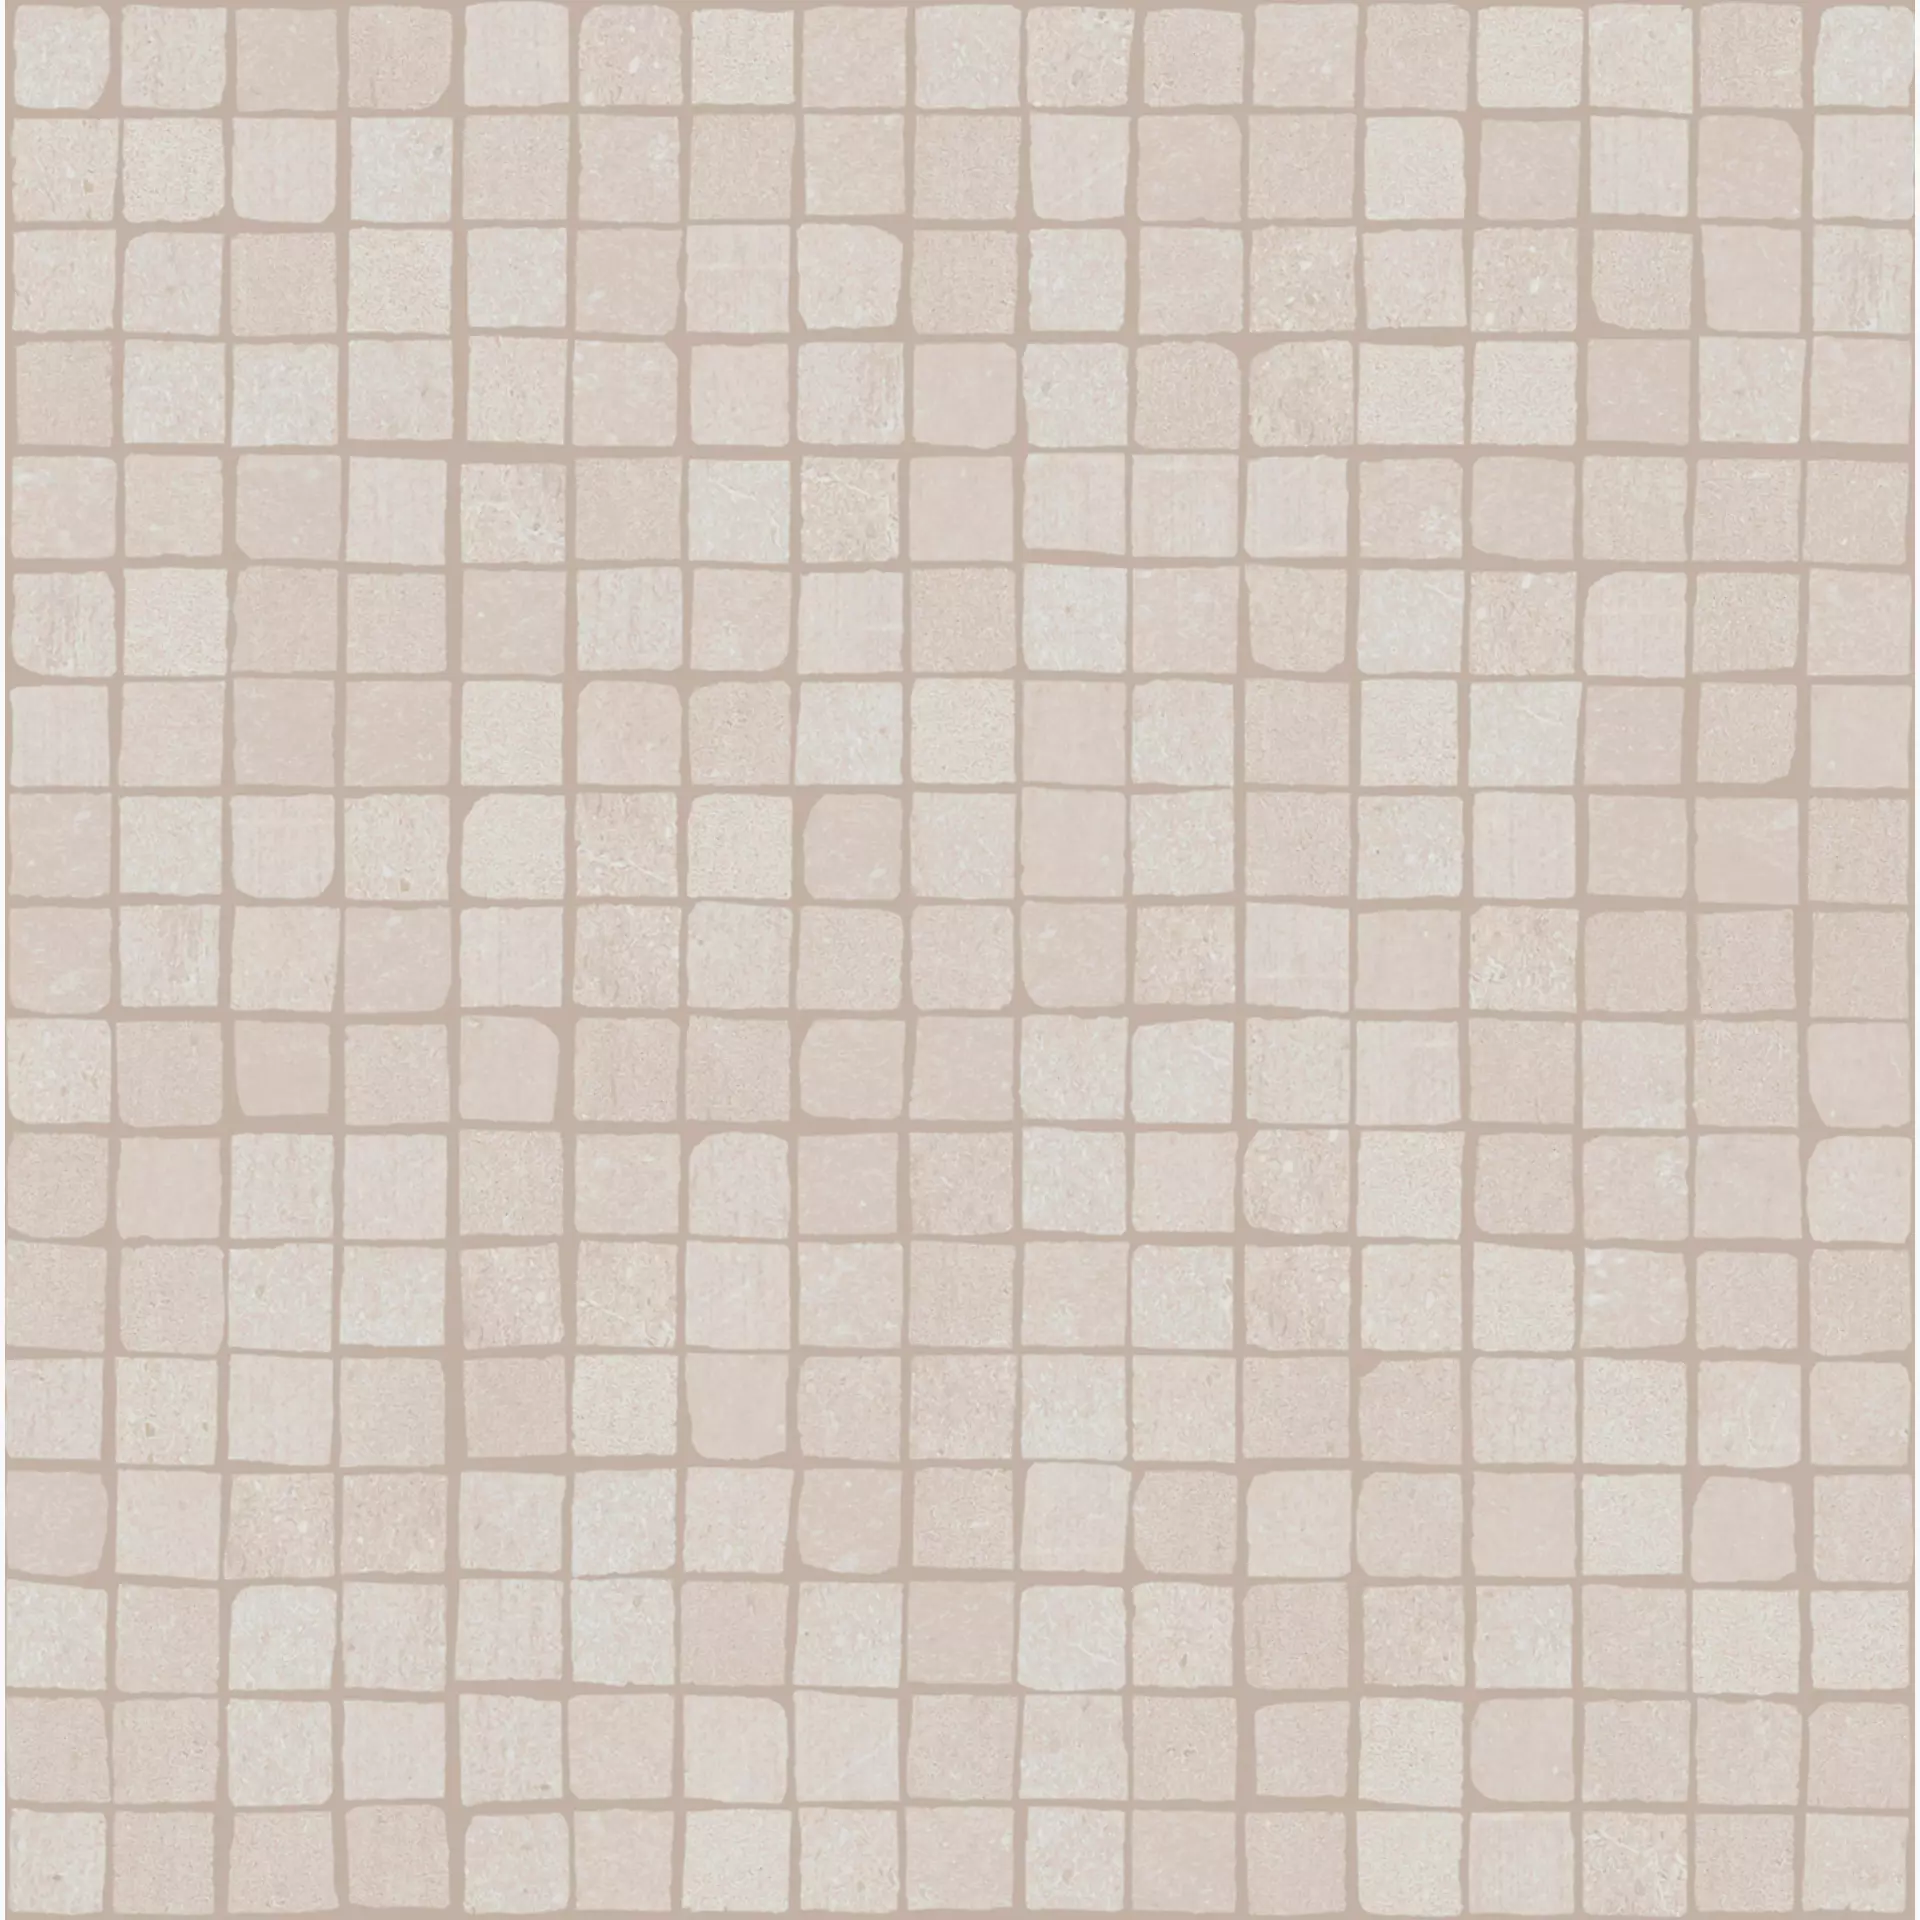 Bodenfliese,Wandfliese Marazzi Plaster Butter Naturale – Matt Butter MMCG matt natur 30x30cm Mosaik 9,5mm